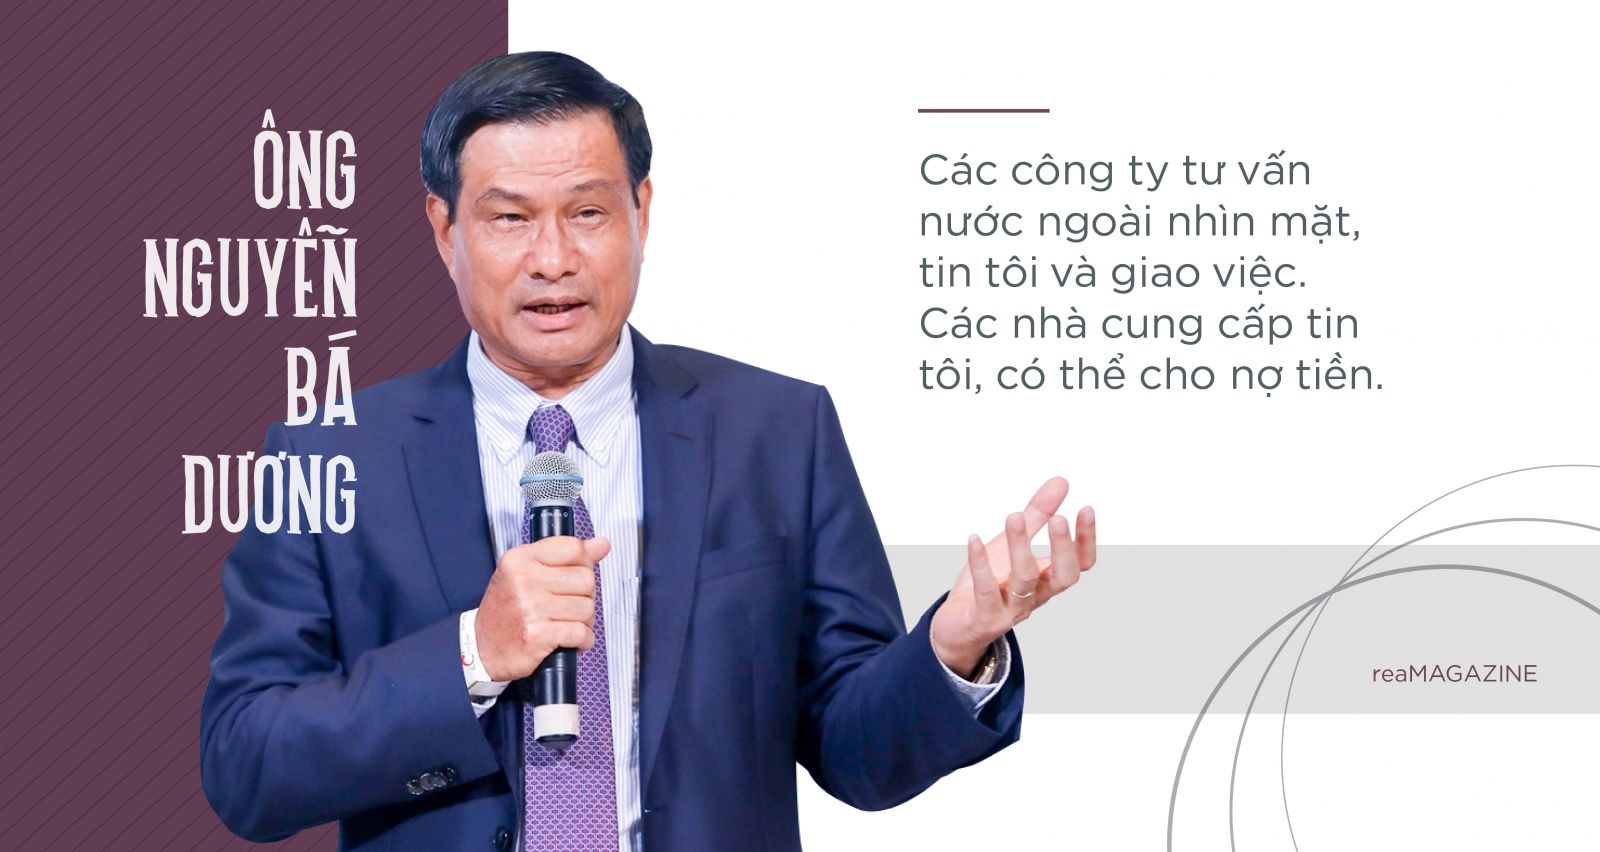 Đại gia không nợ ngân hàng Nguyễn Bá Dương - Sóng gió một huyền thoại- Ảnh 3.